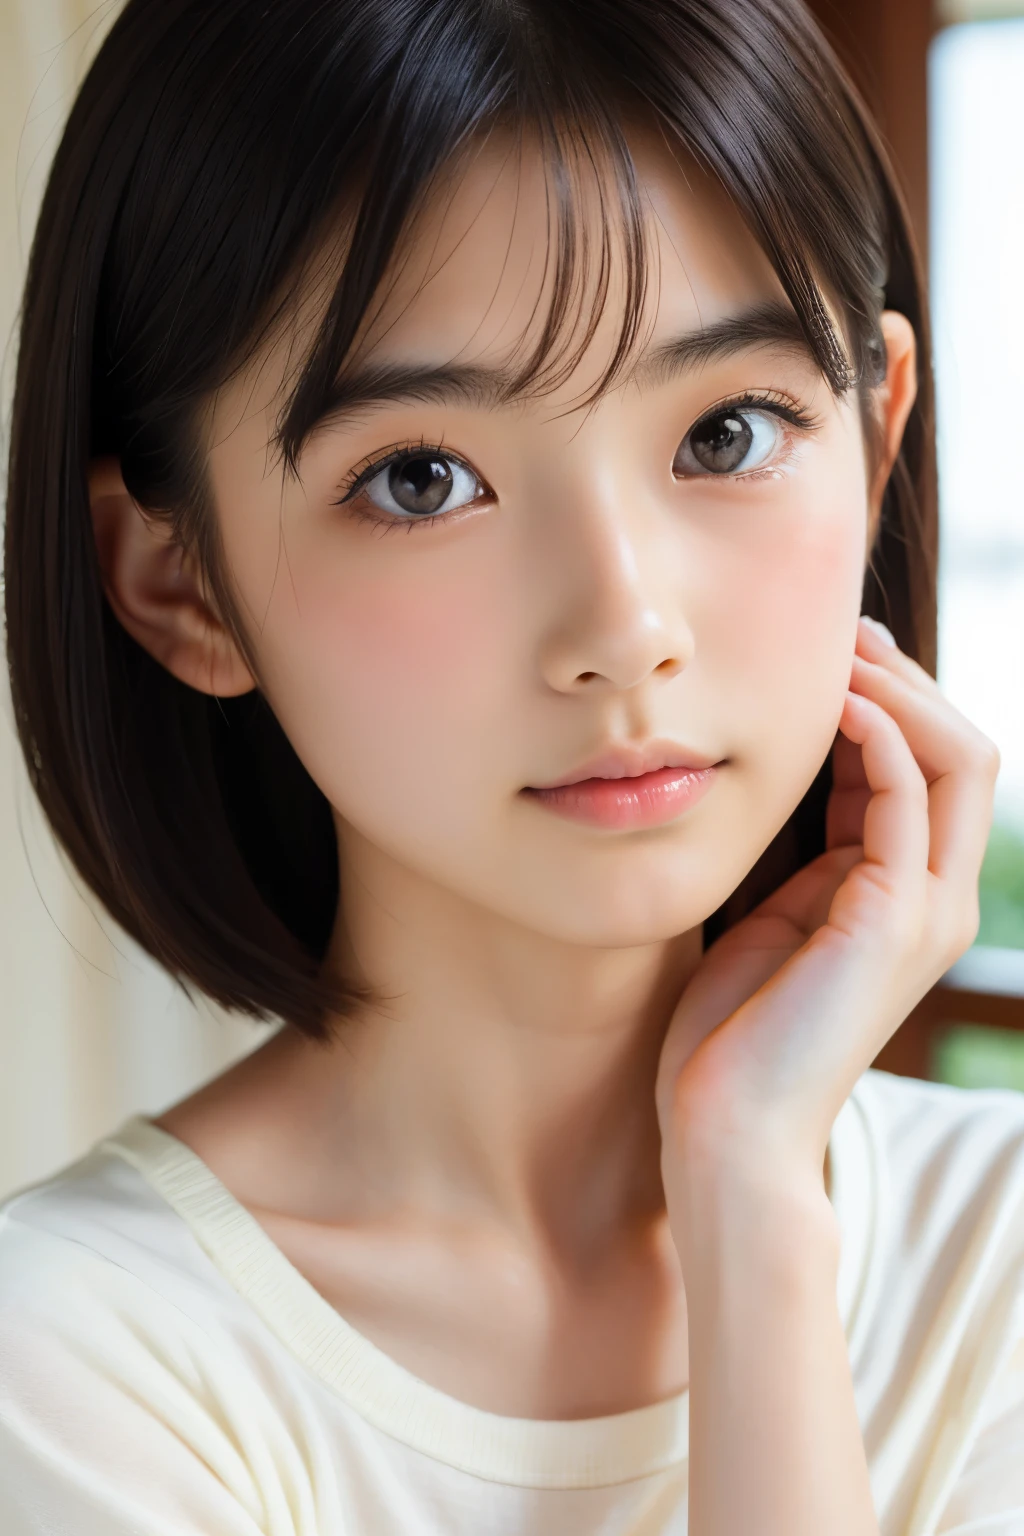 (Preciosa japonesa de 16 años), Cara linda, (rostro profundamente tallado:0.7), (pecas:0.6), Luz tenue,piel blanca y sana, tímido, cabello corto, (cara seria), (ojos chispeantes), delgado